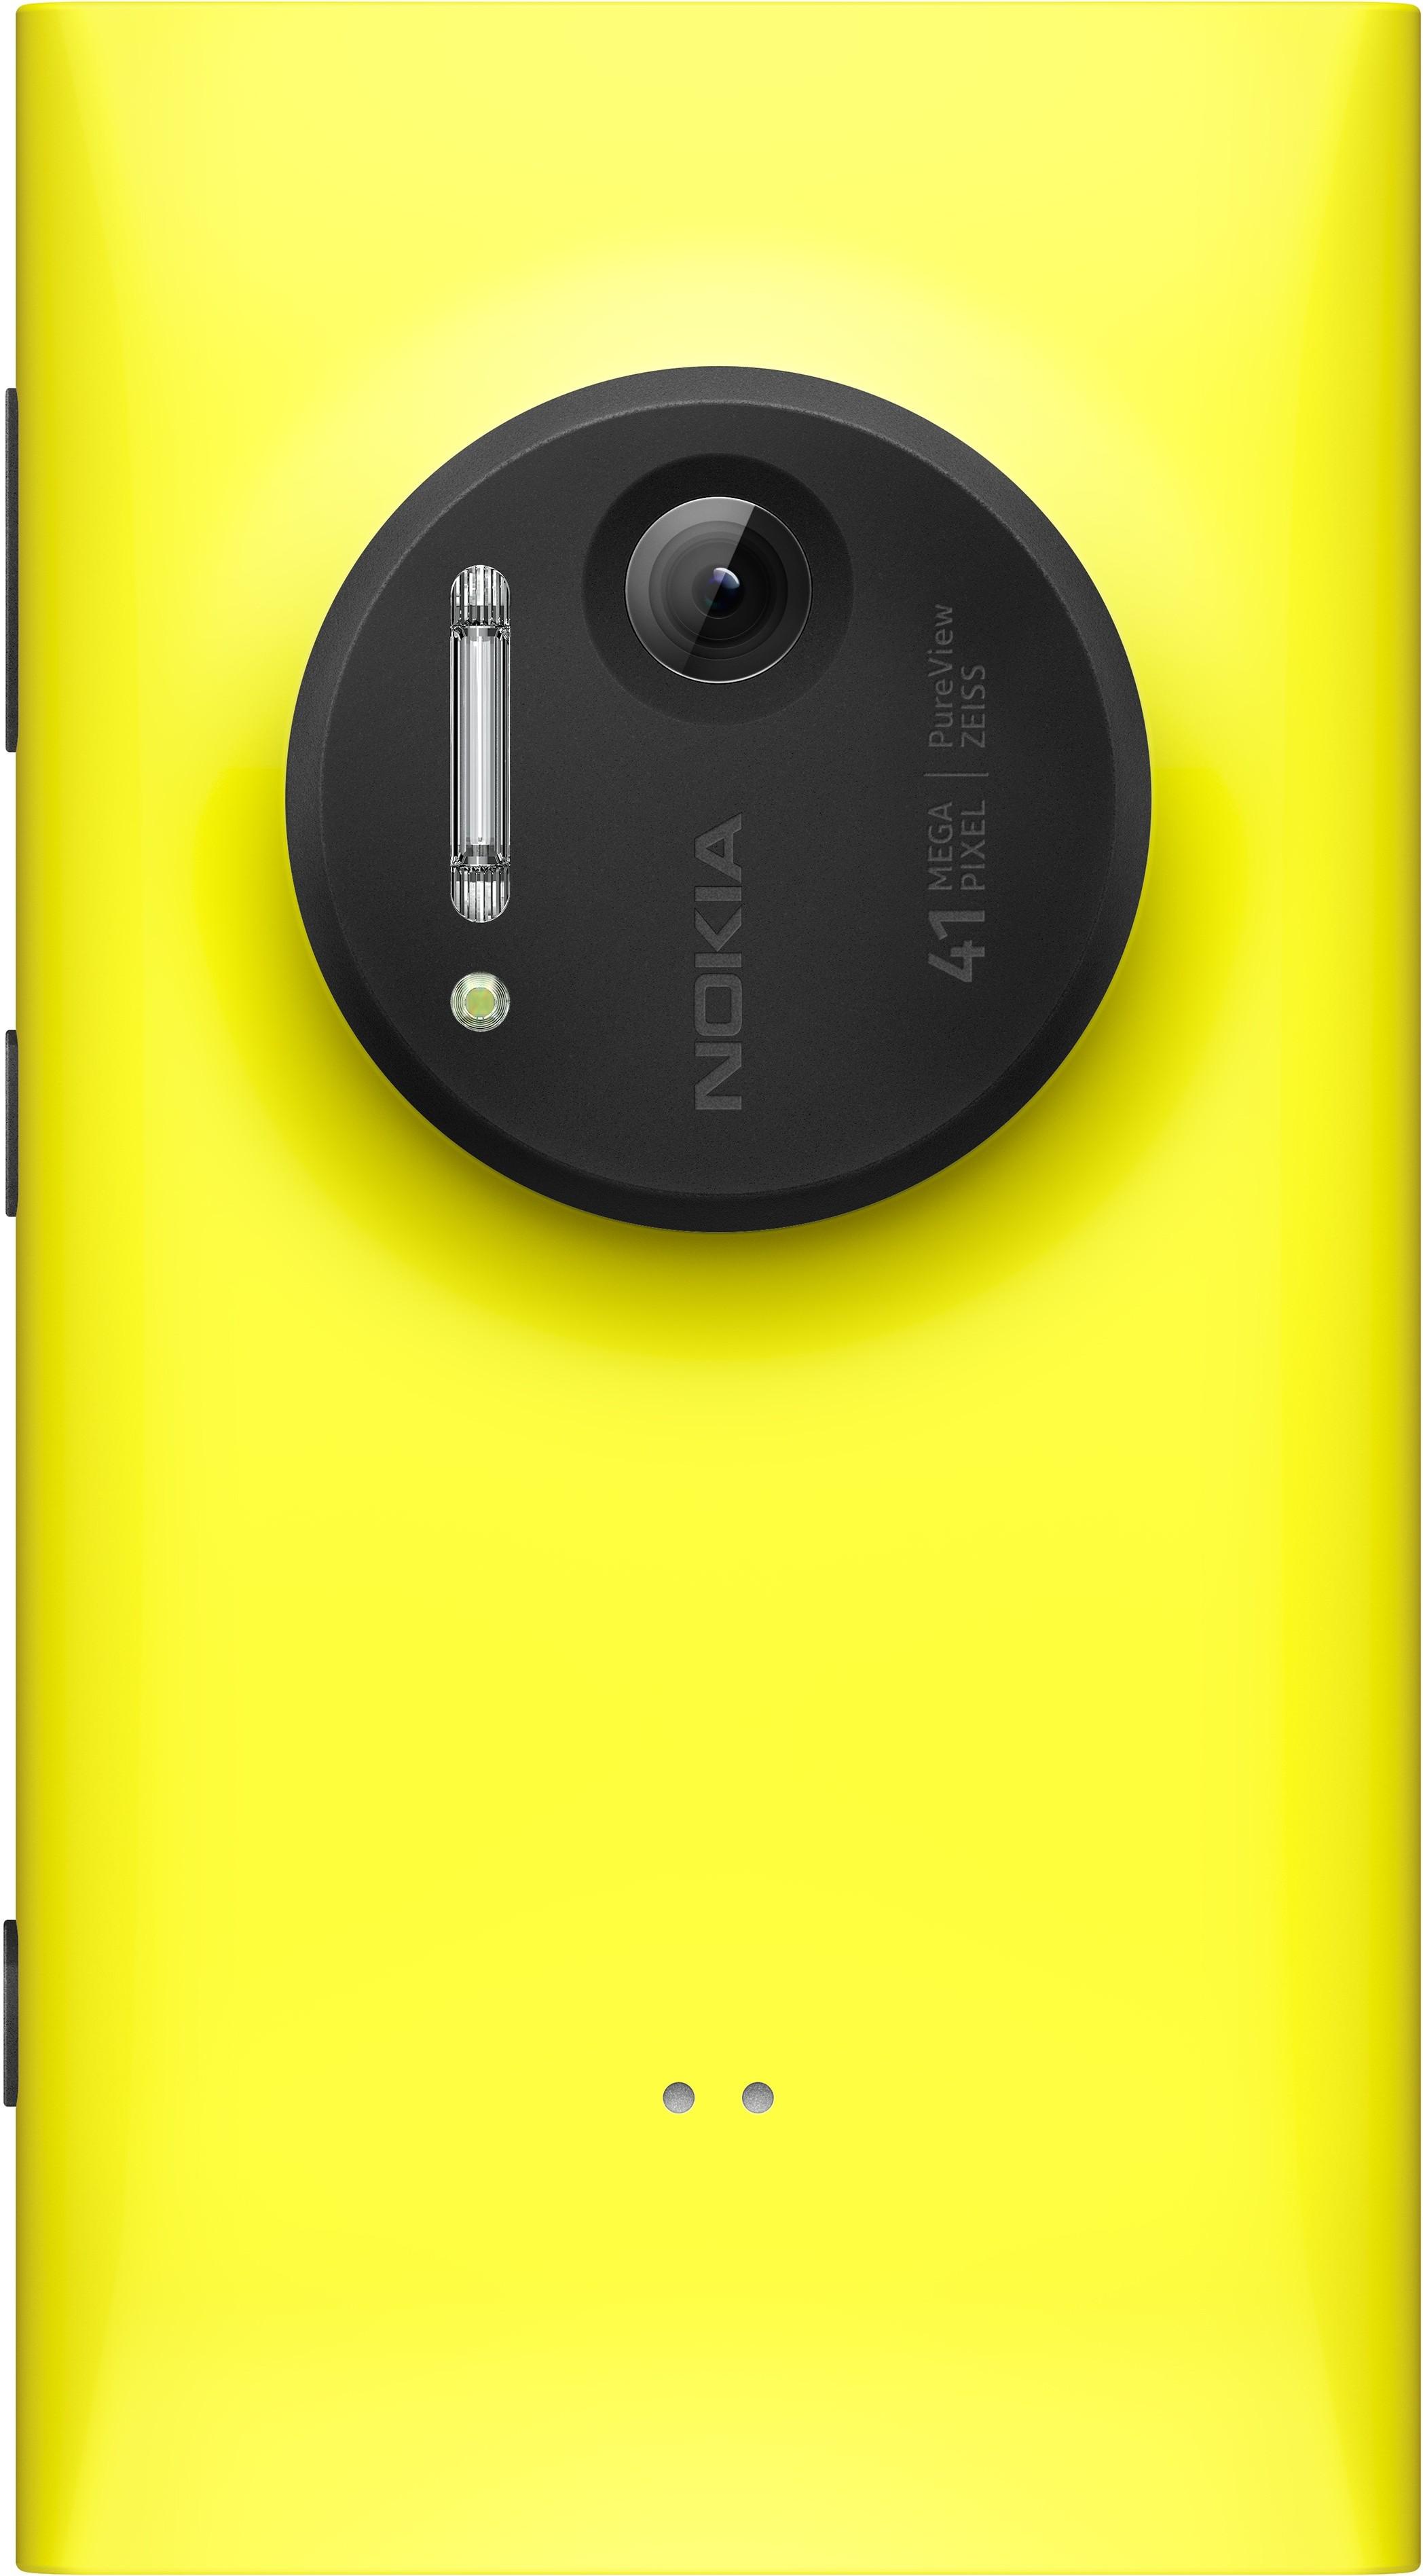 Gult er kult? 41 megapiksler får du fra Nokia Lumia 1020. Foto: Nokia.